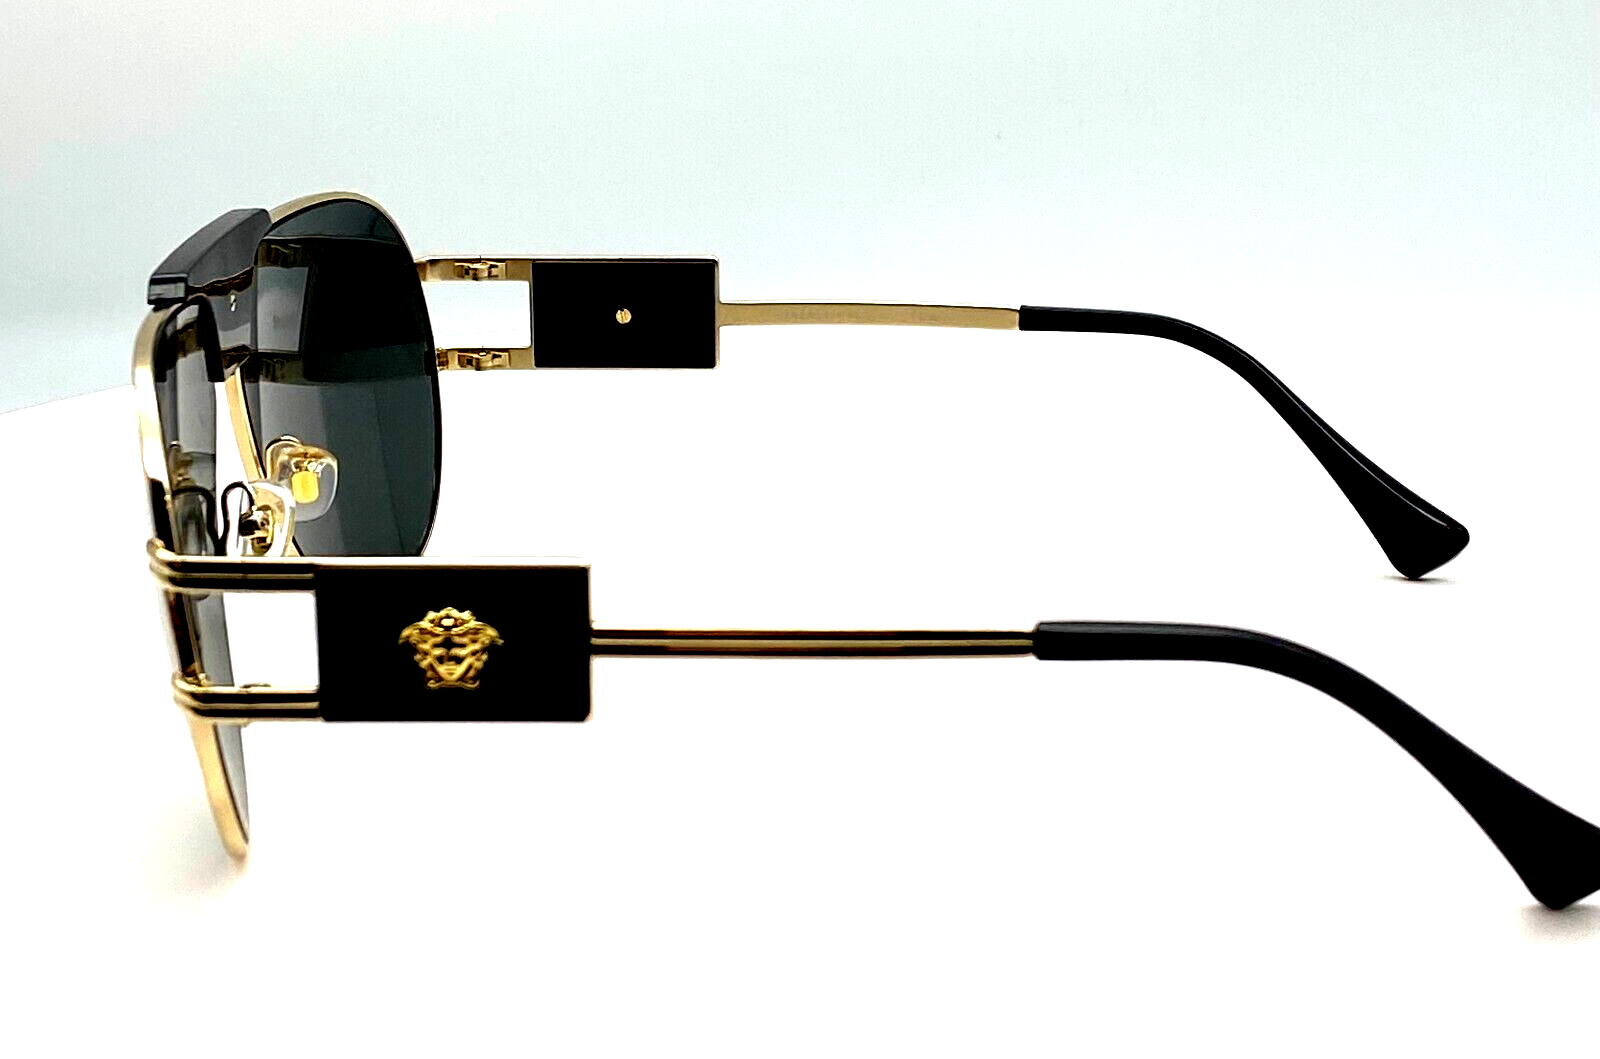 Versace VE2252 100287 Gold/Dark Grey Oval 63mm Men's Sunglasses